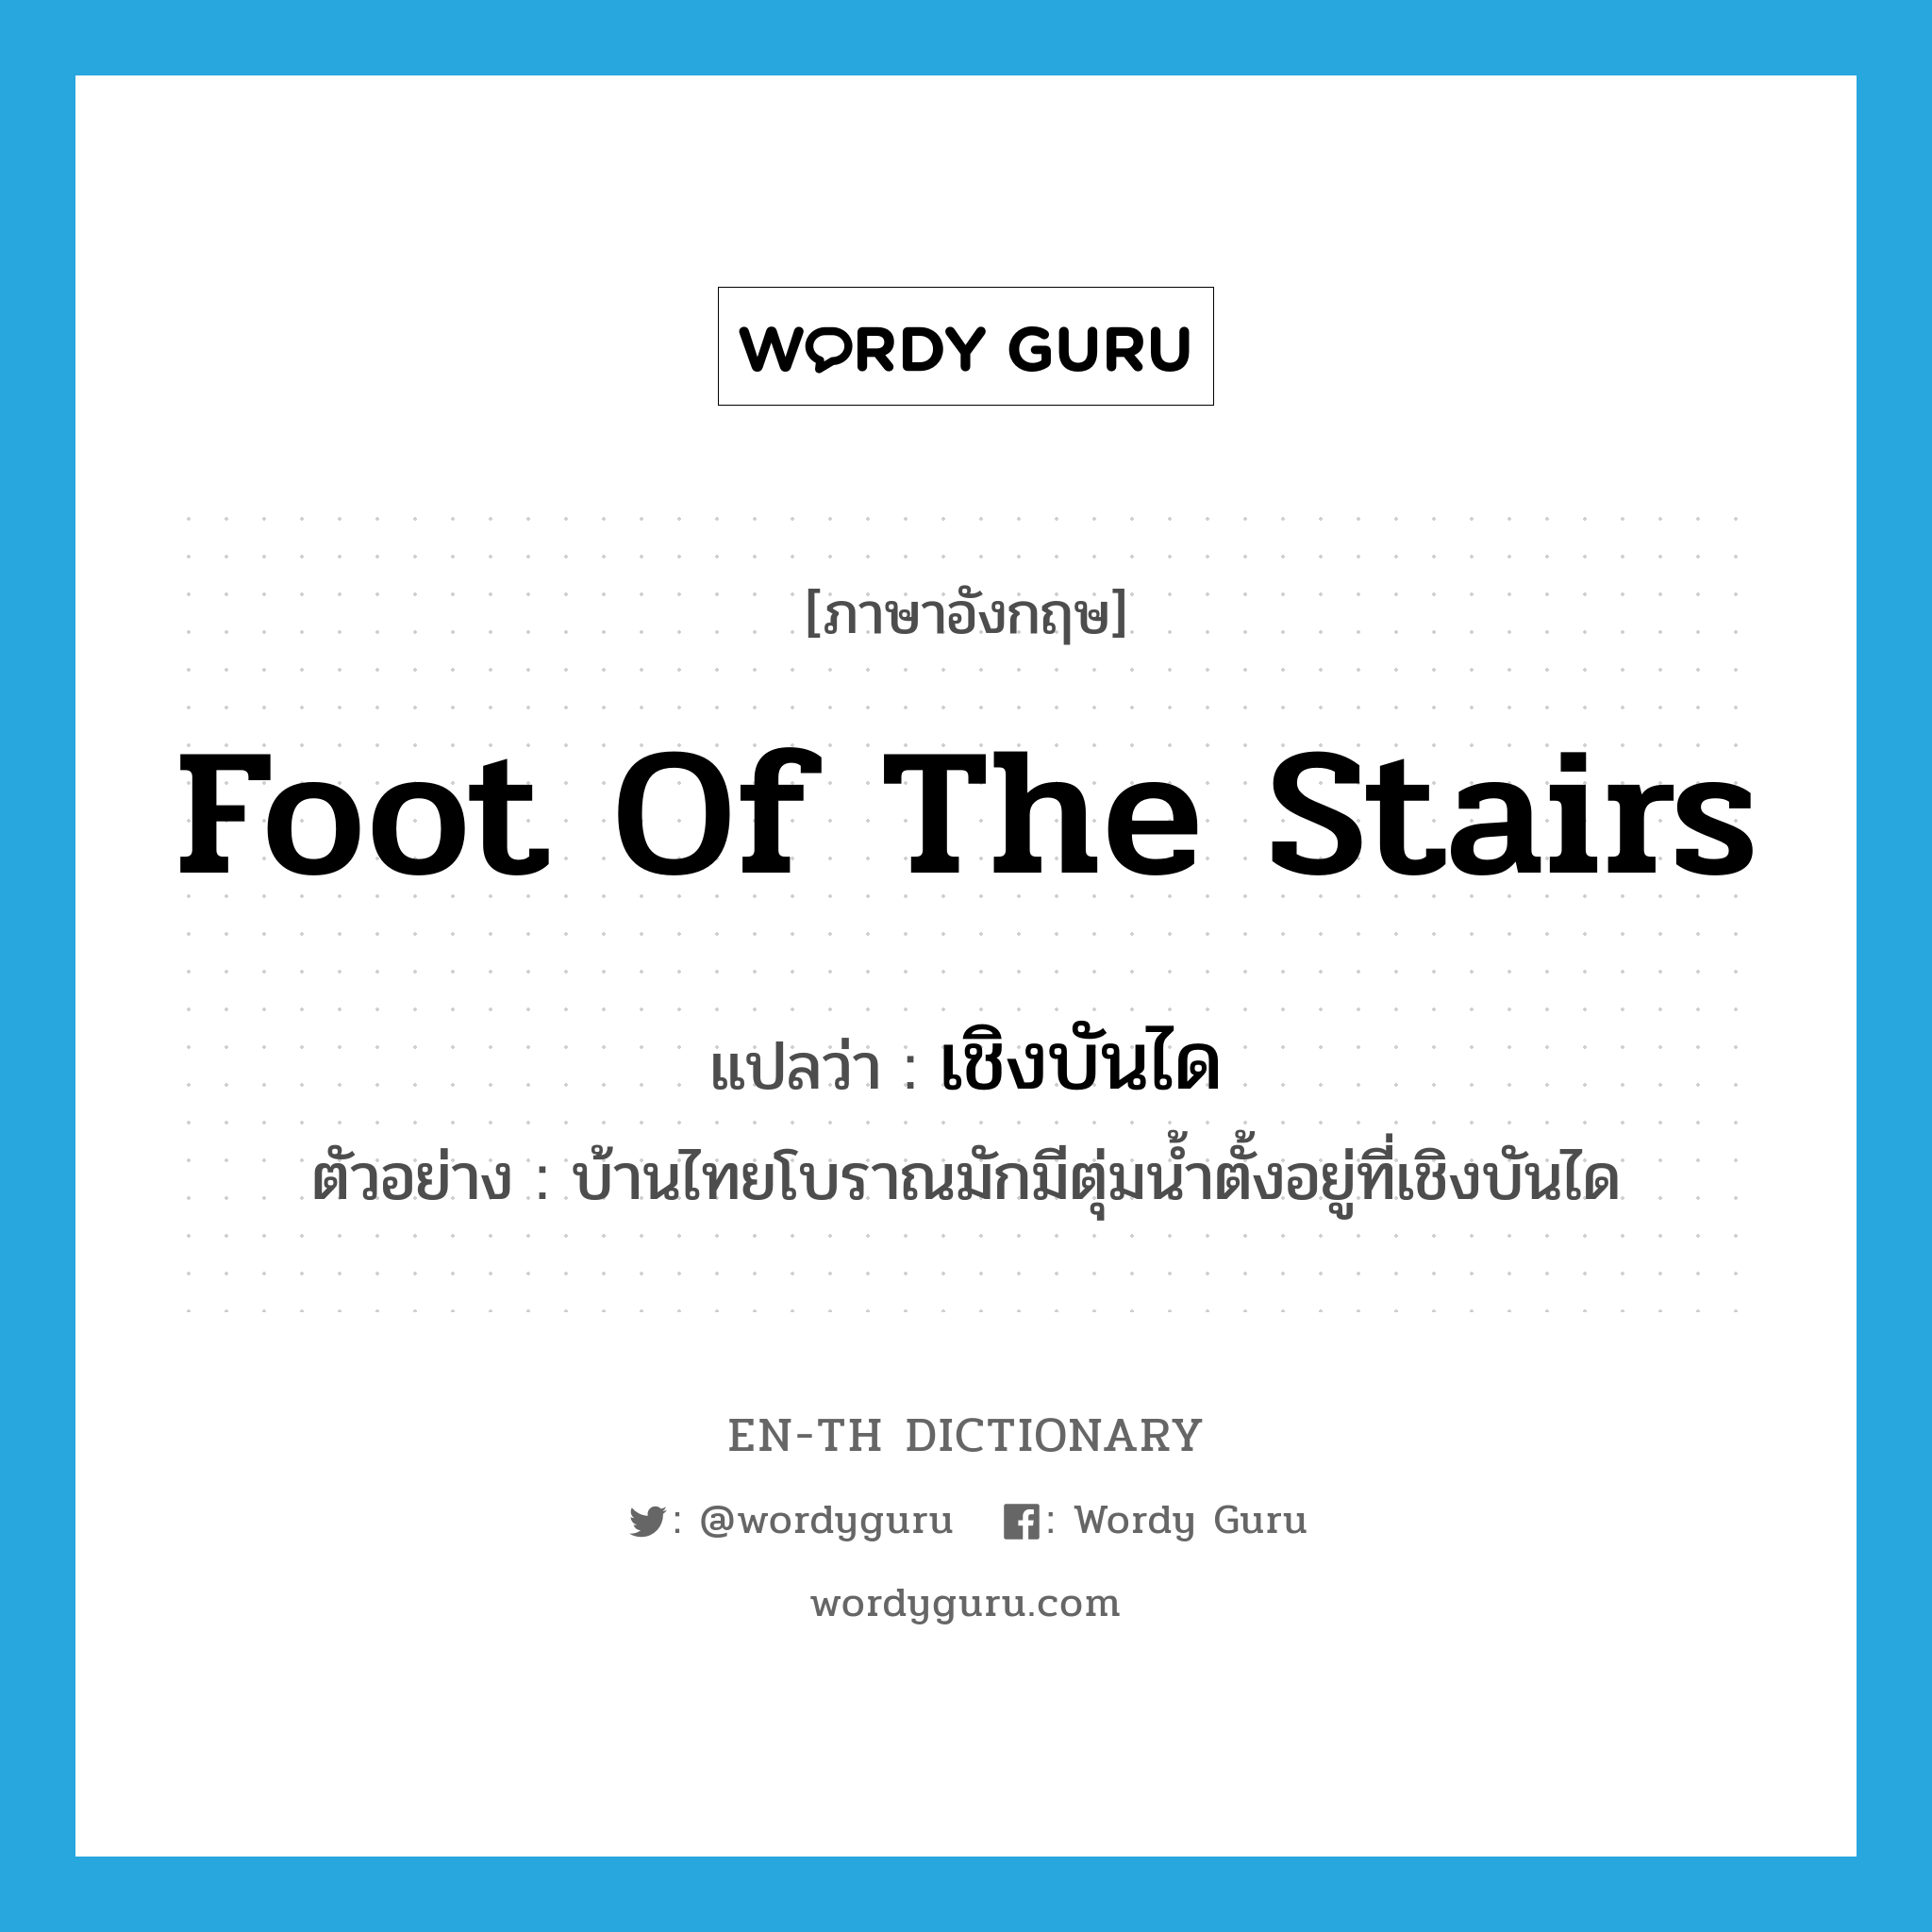 foot of the stairs แปลว่า?, คำศัพท์ภาษาอังกฤษ foot of the stairs แปลว่า เชิงบันได ประเภท N ตัวอย่าง บ้านไทยโบราณมักมีตุ่มน้ำตั้งอยู่ที่เชิงบันได หมวด N